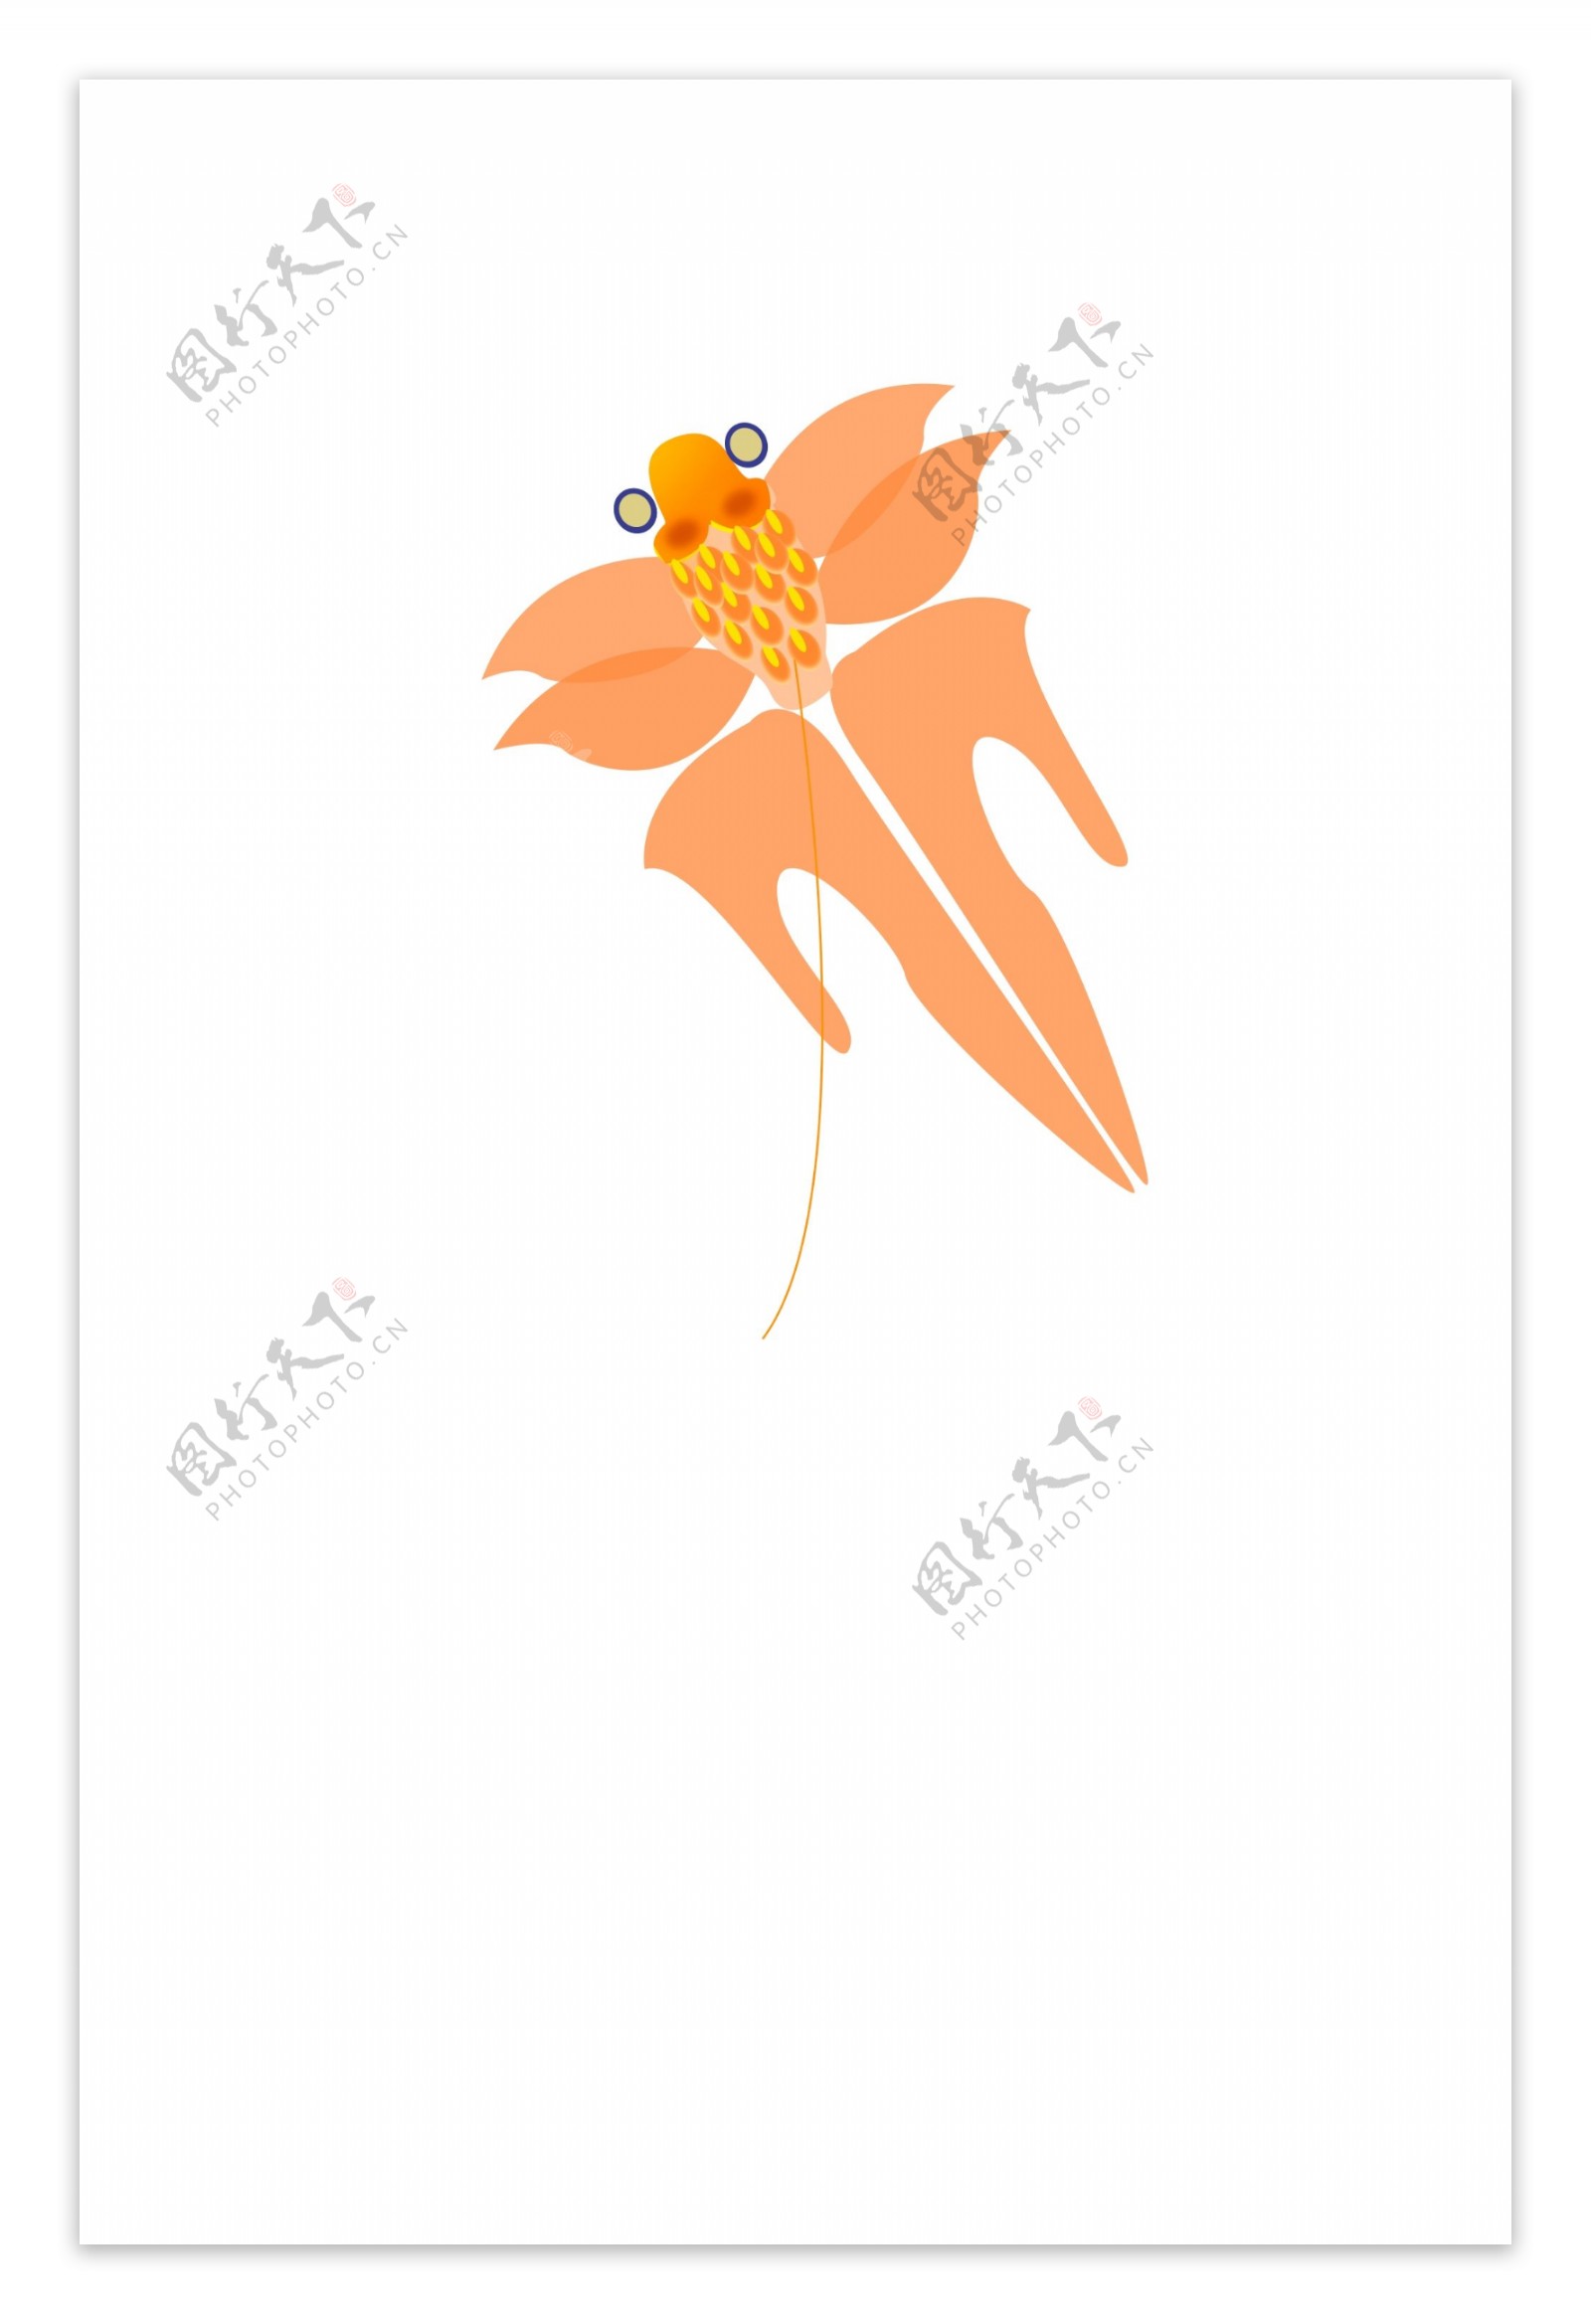 橘黄色的金鱼风筝插画